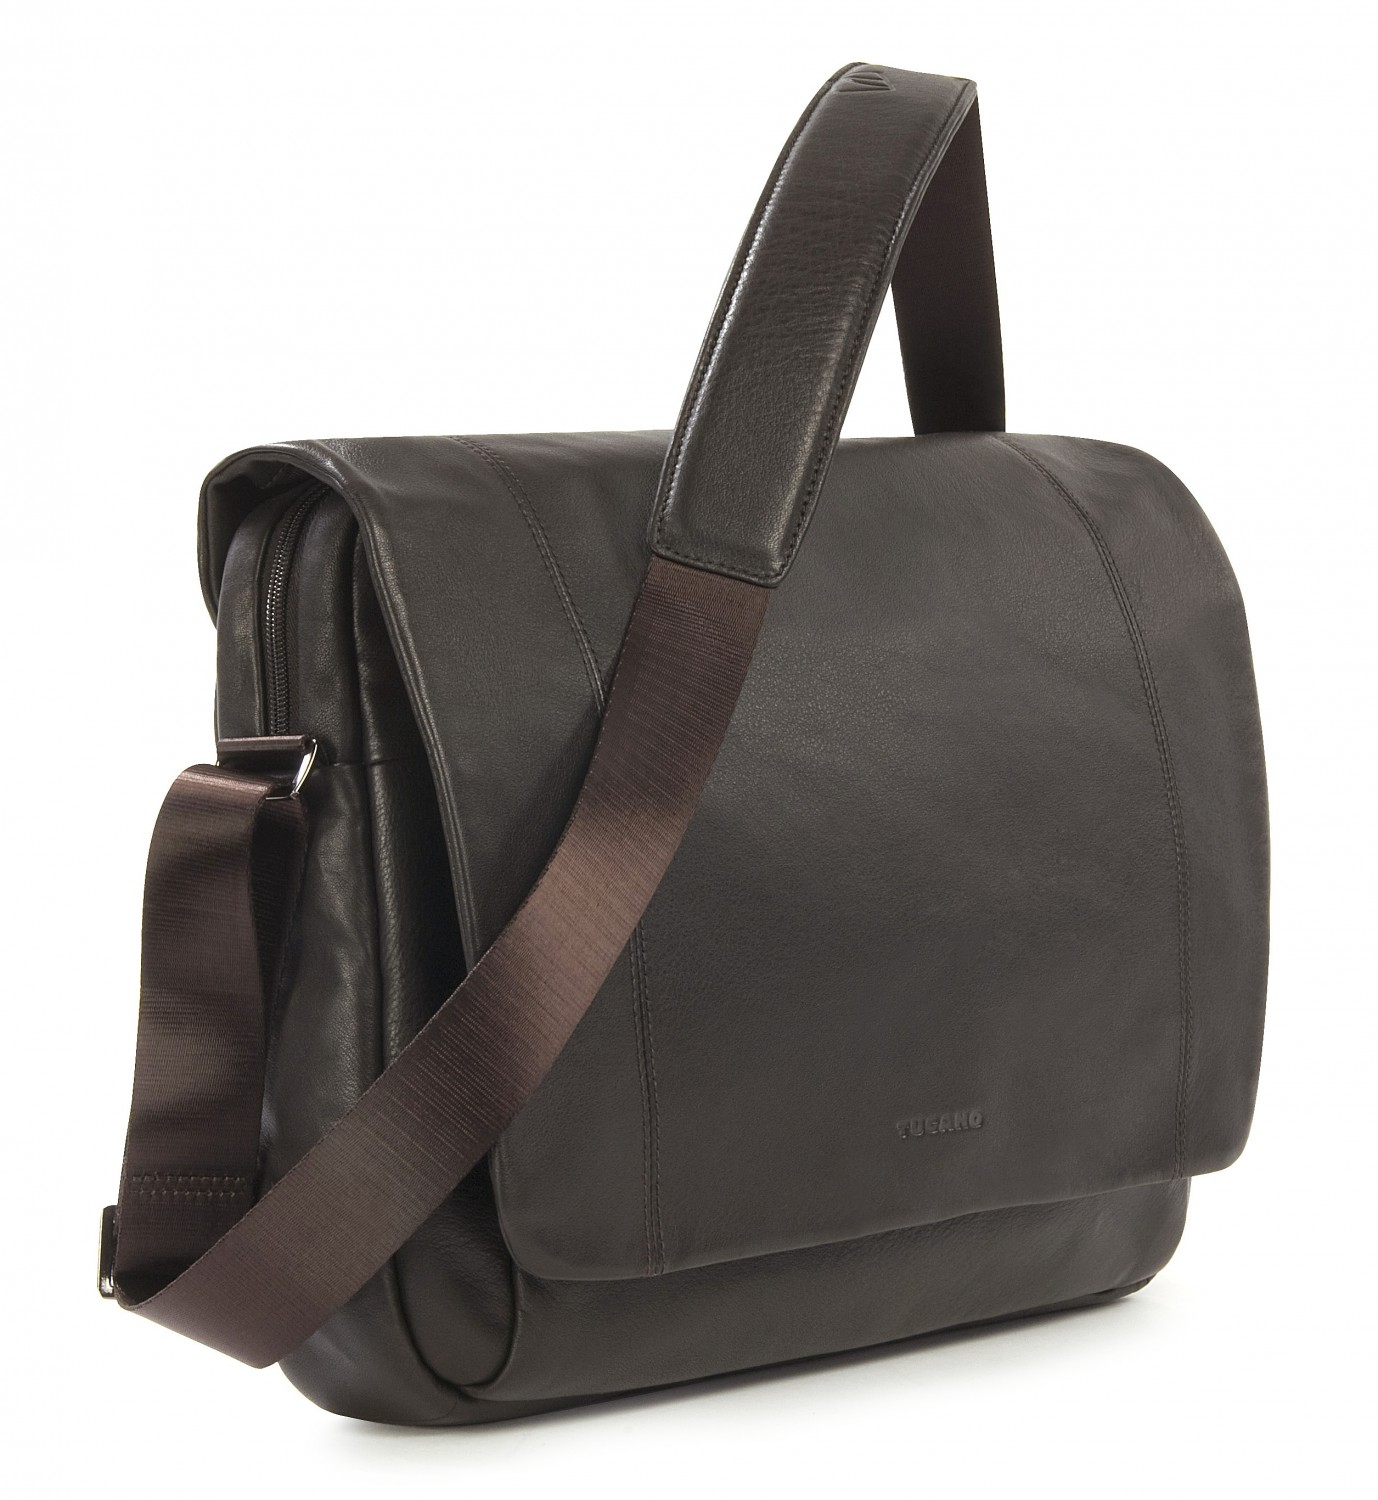 TUCANO One Premium Umhängetasche Dunkelbraun Universal Tasche für Notebook Leder